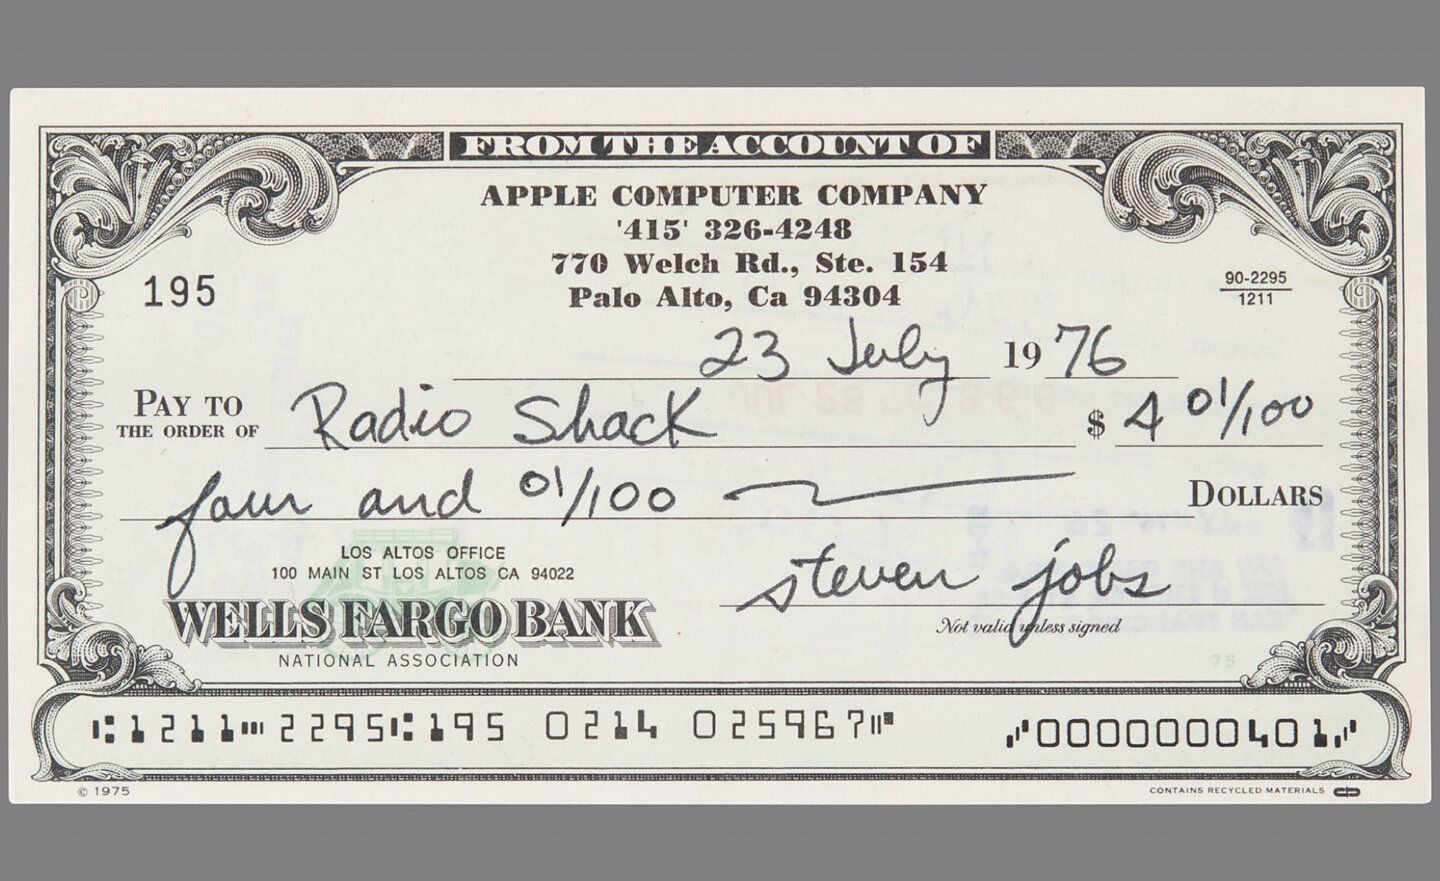 賈伯斯簽署的 1976 年支票以 46,063 美元創拍賣價紀錄